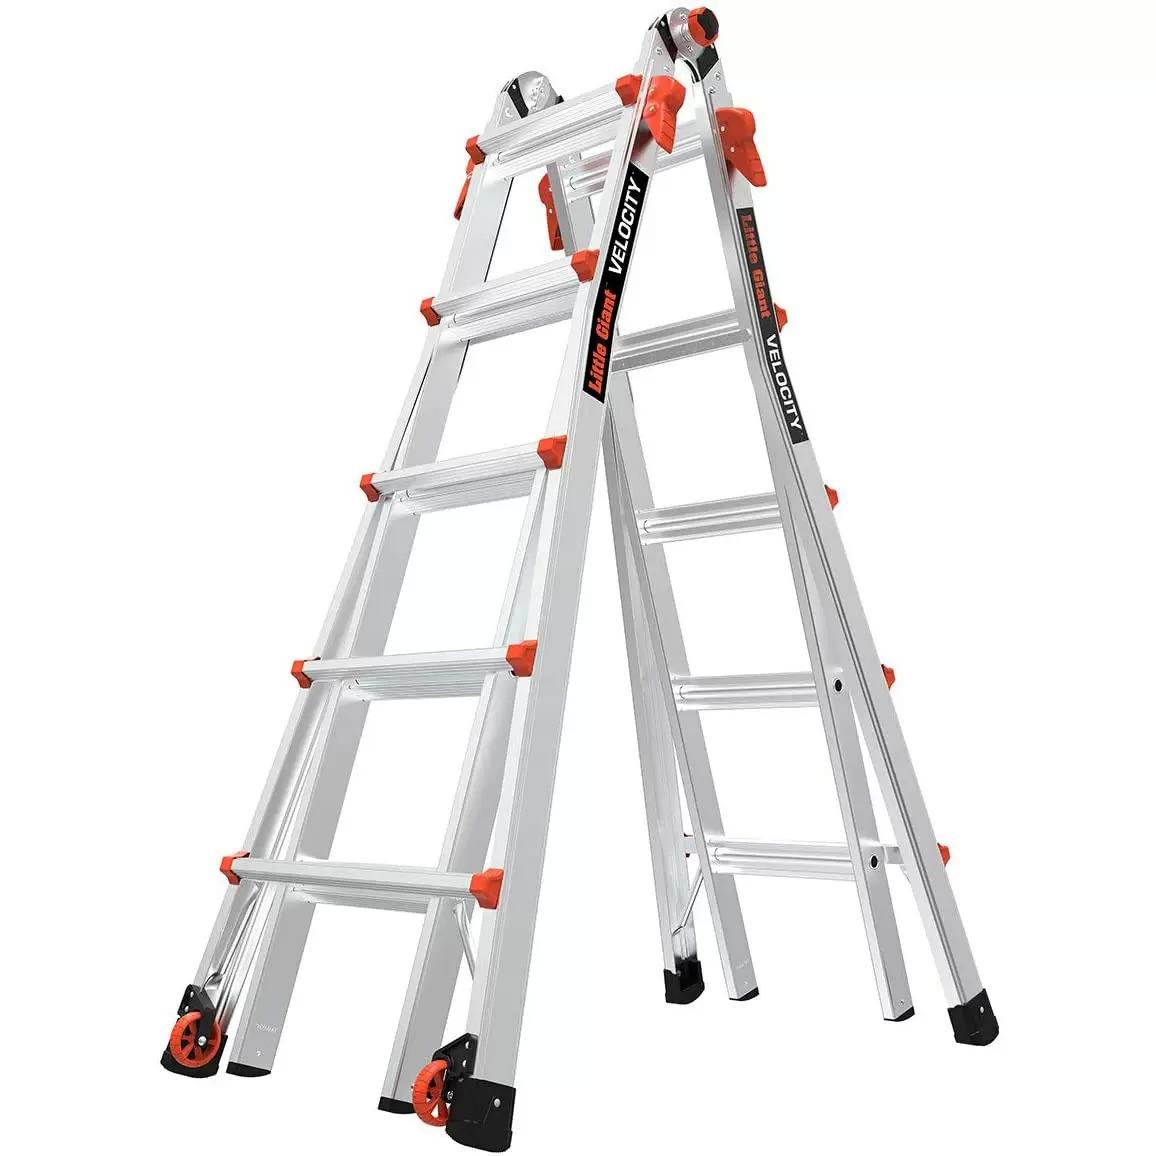 22ft Little Giant Velocity M22 Multi Purpose Ladder for $189.99